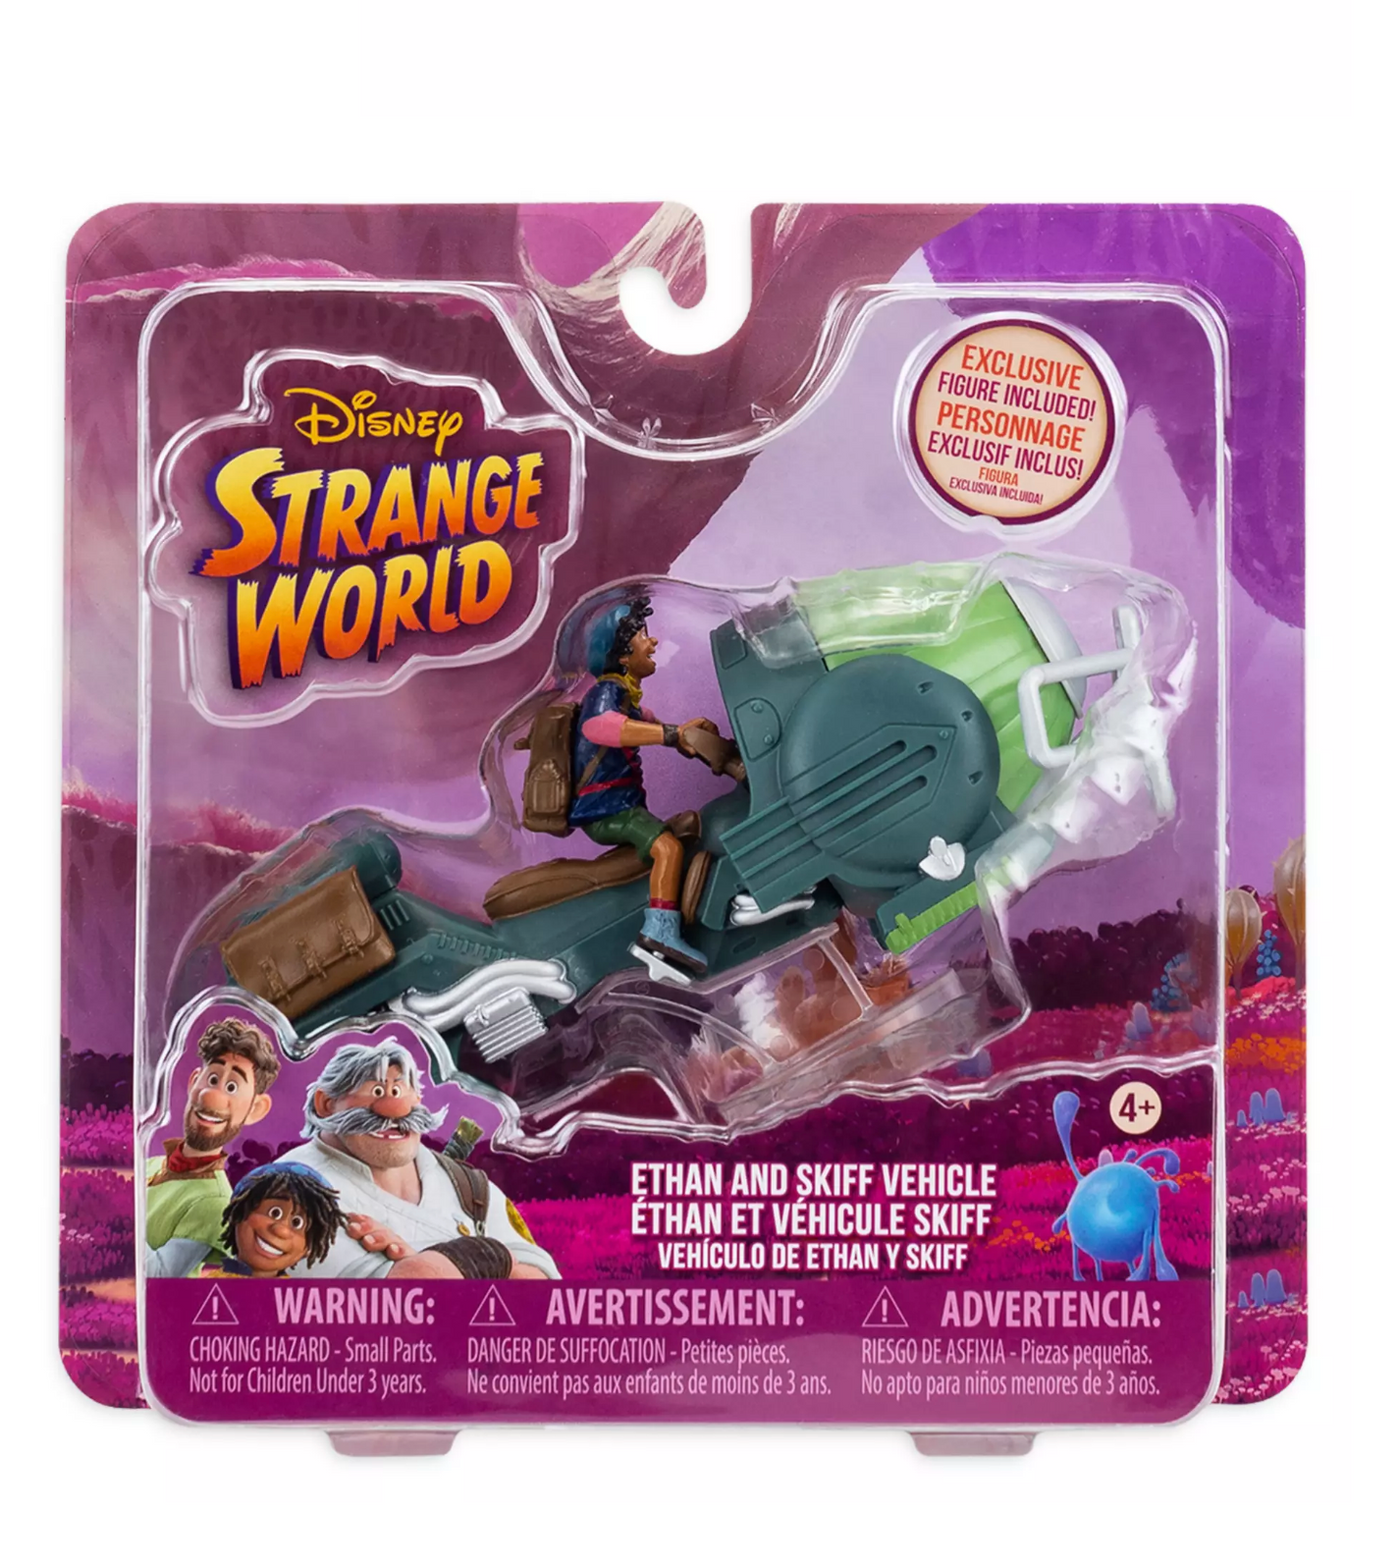 Disney Strange World Ethan and Skiff Vehicle Play Set New with Box